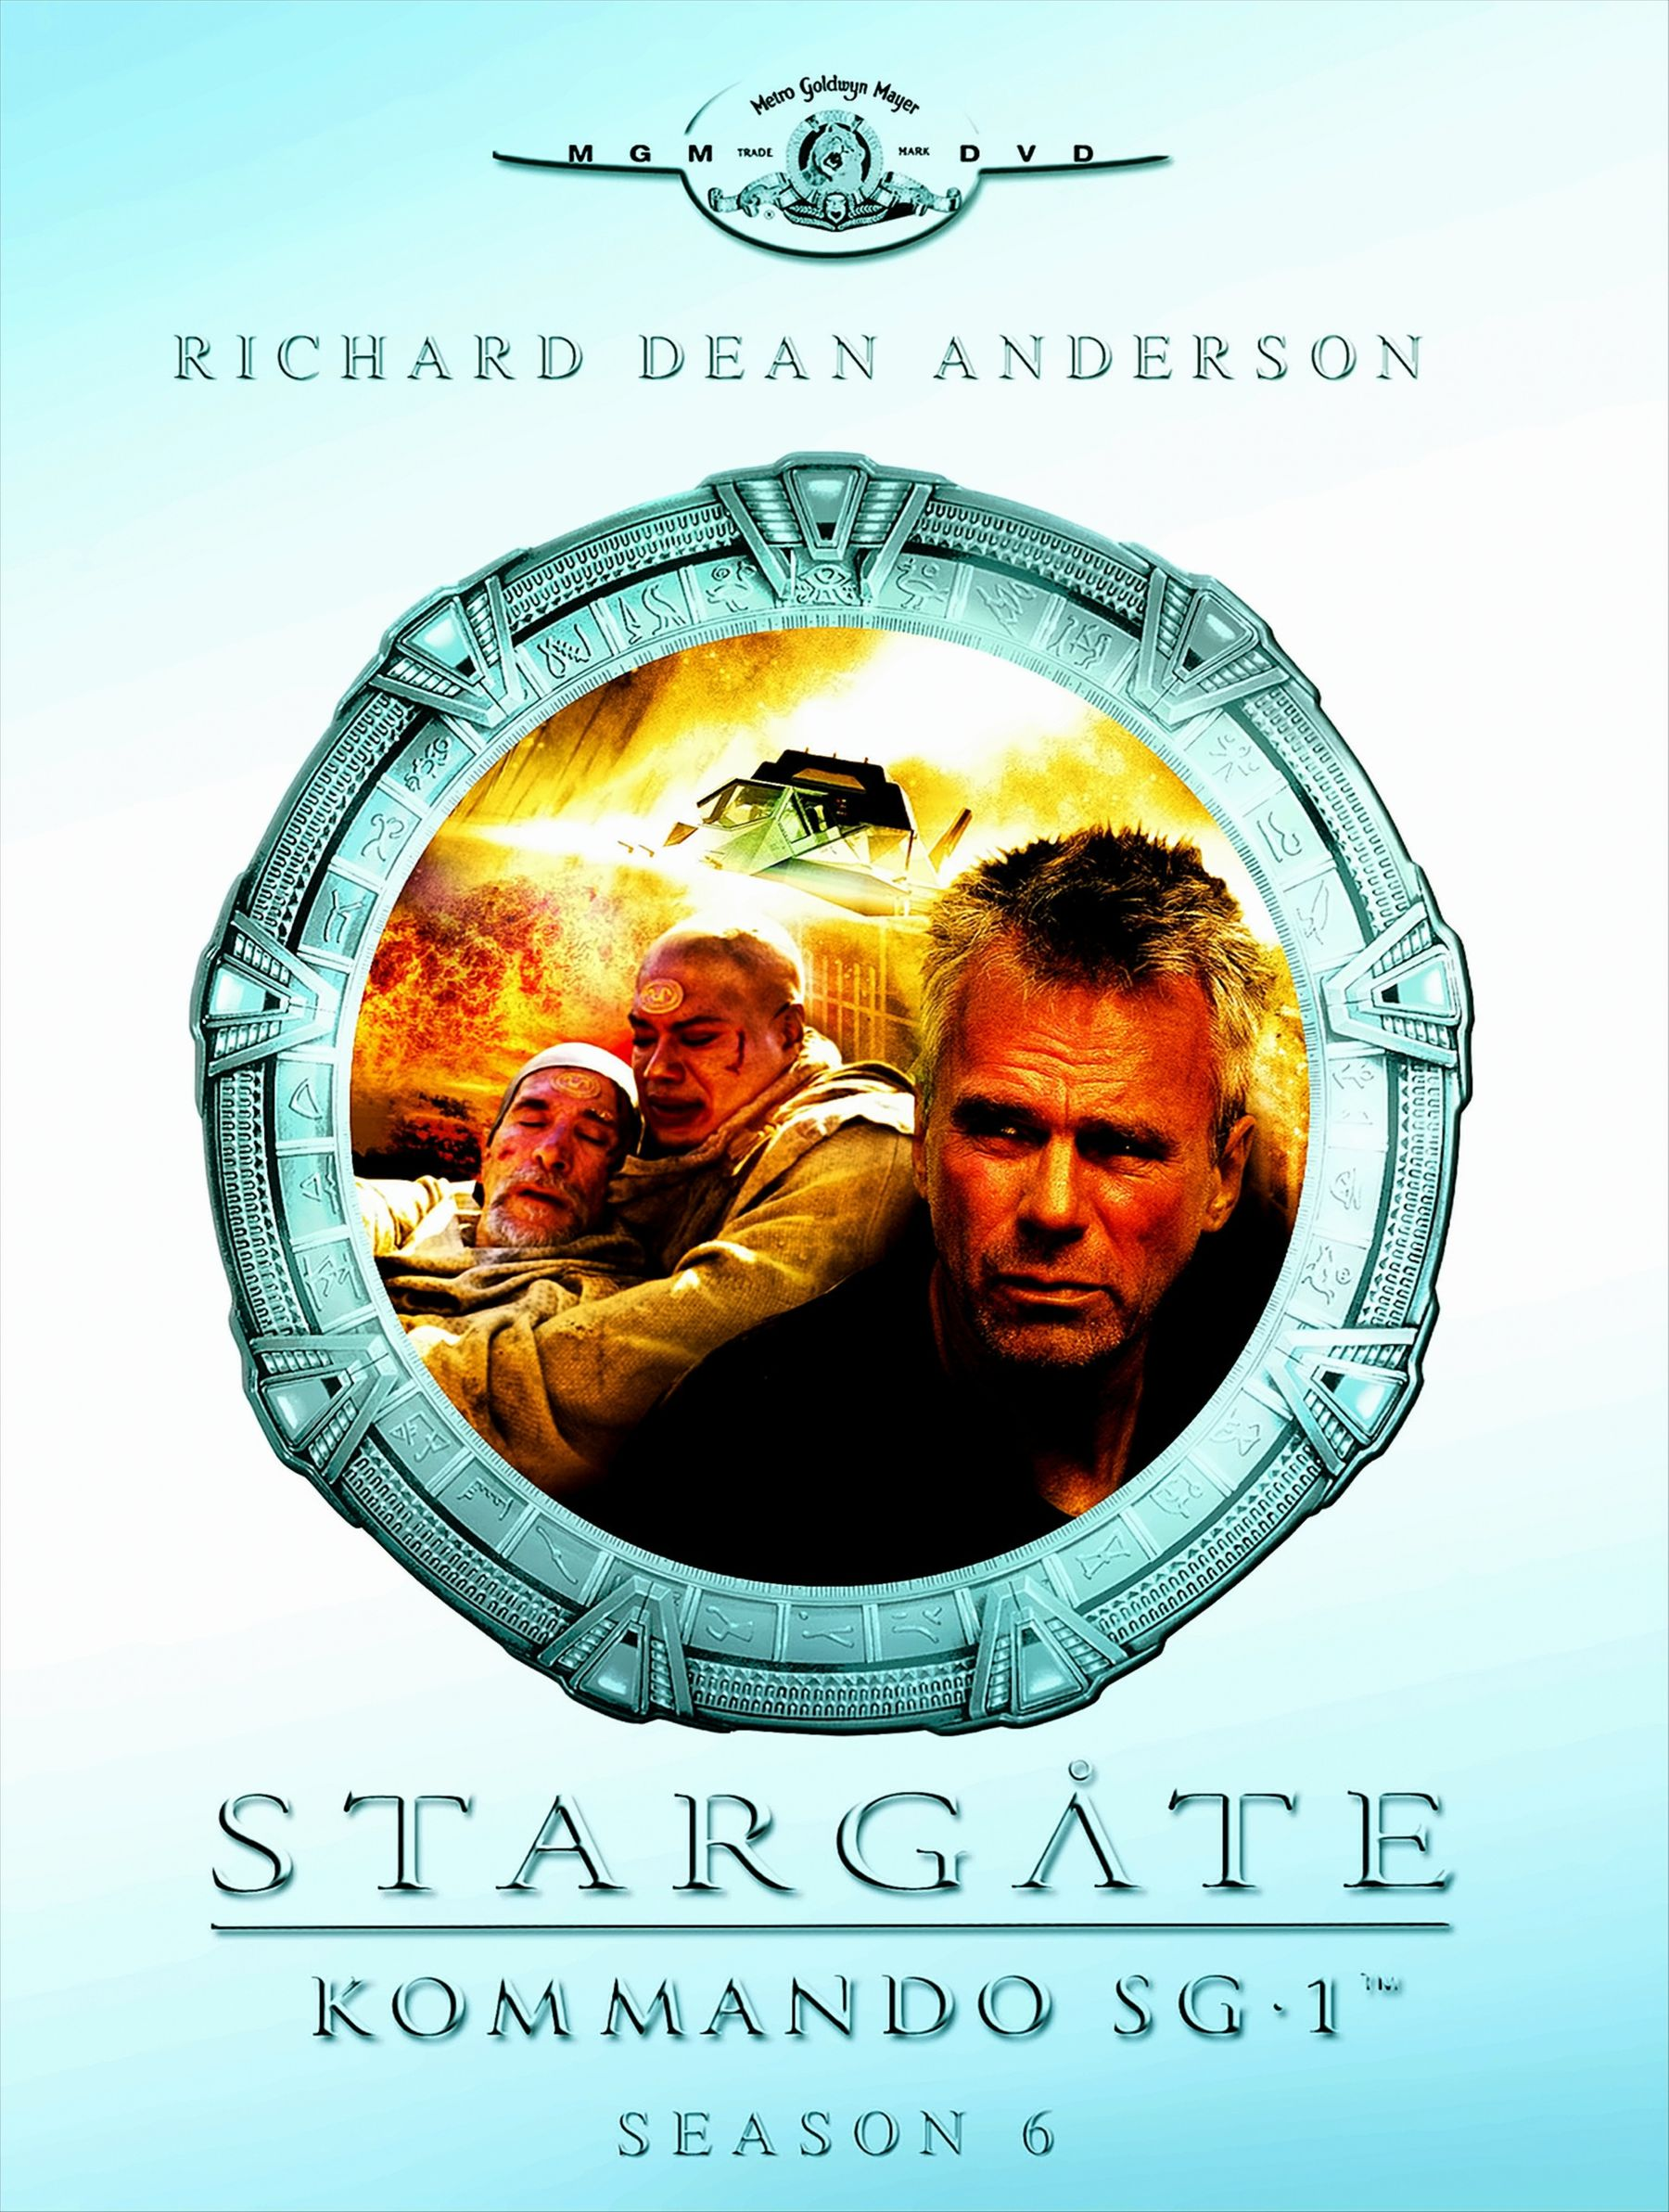 Kommando 06 DVDs) Stargate SG-1 - (6 Season DVD